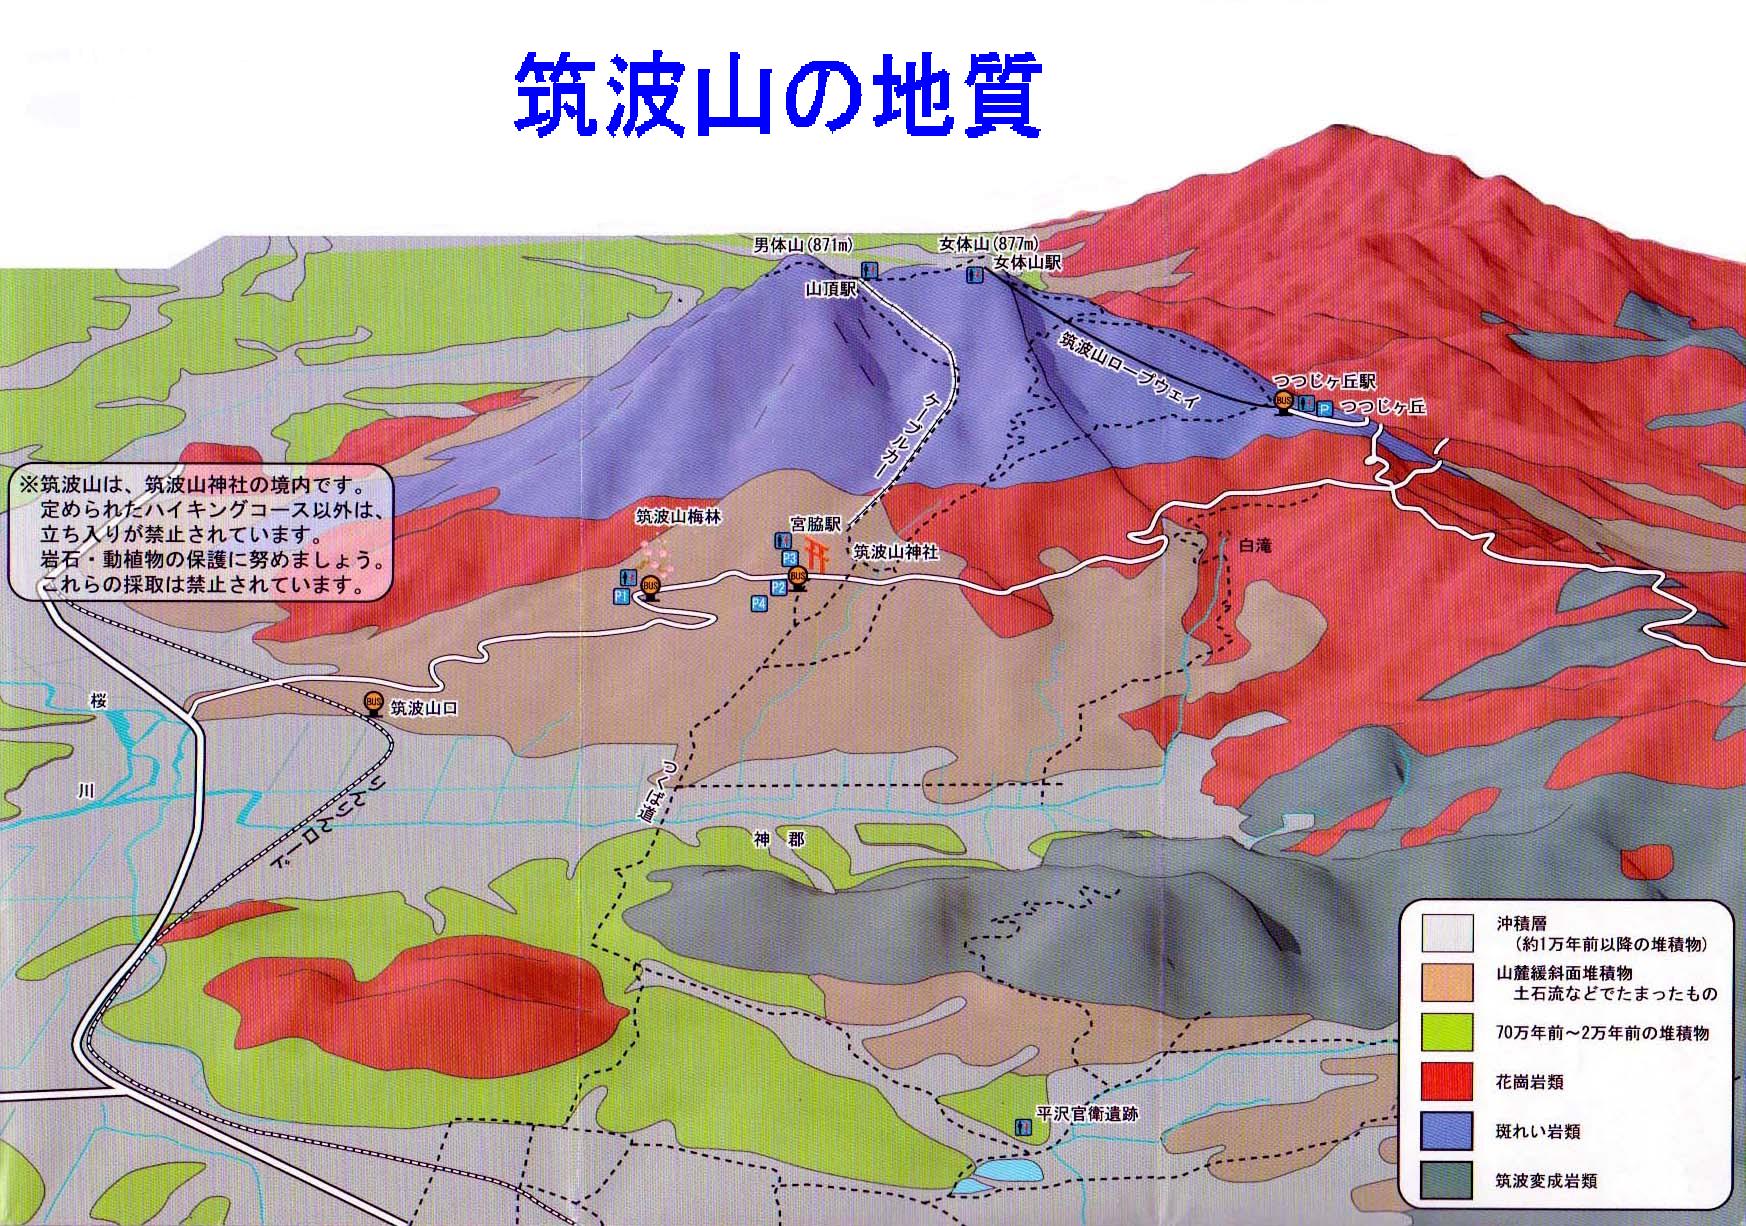 筑波山の生い立ち 筑波山は噴火しない安全な山 ふるさとは誰にもある そこには先人の足跡 伝承されたものがある つくばには ガマの油売り口上がある